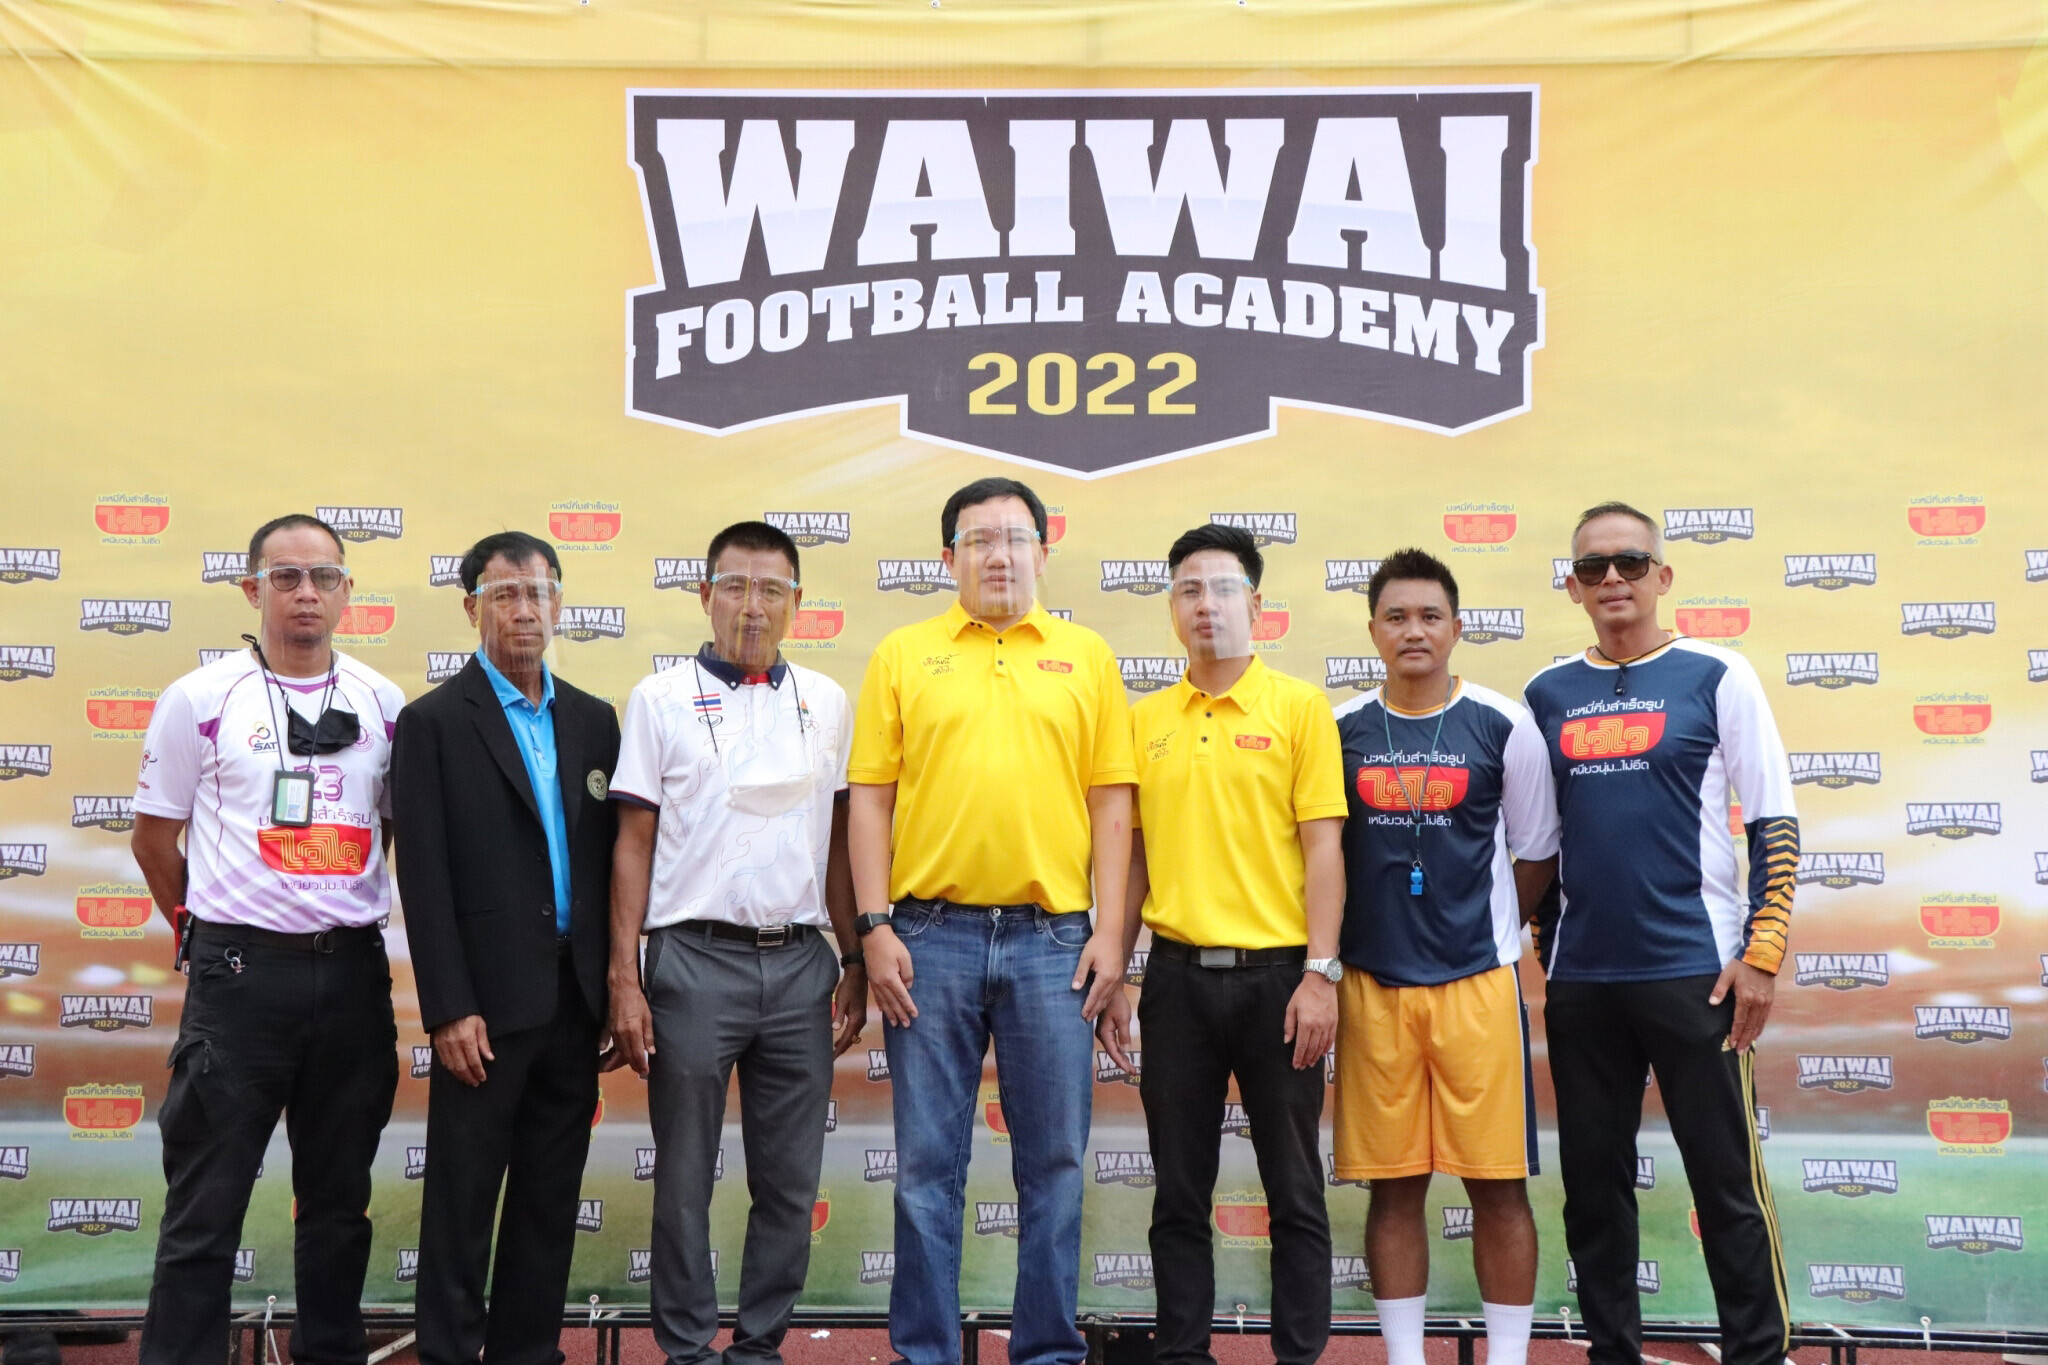 "ไวไว" เปิดโครงการ WAIWAI FOOTBALL ACADEMY 2022 คลินิกฟุตบอลเยาวชนเคลื่อนที่ สนามแรก จ. พิษณุโลก เรียนฟรี ปูทางสู่นักเตะอาชีพ